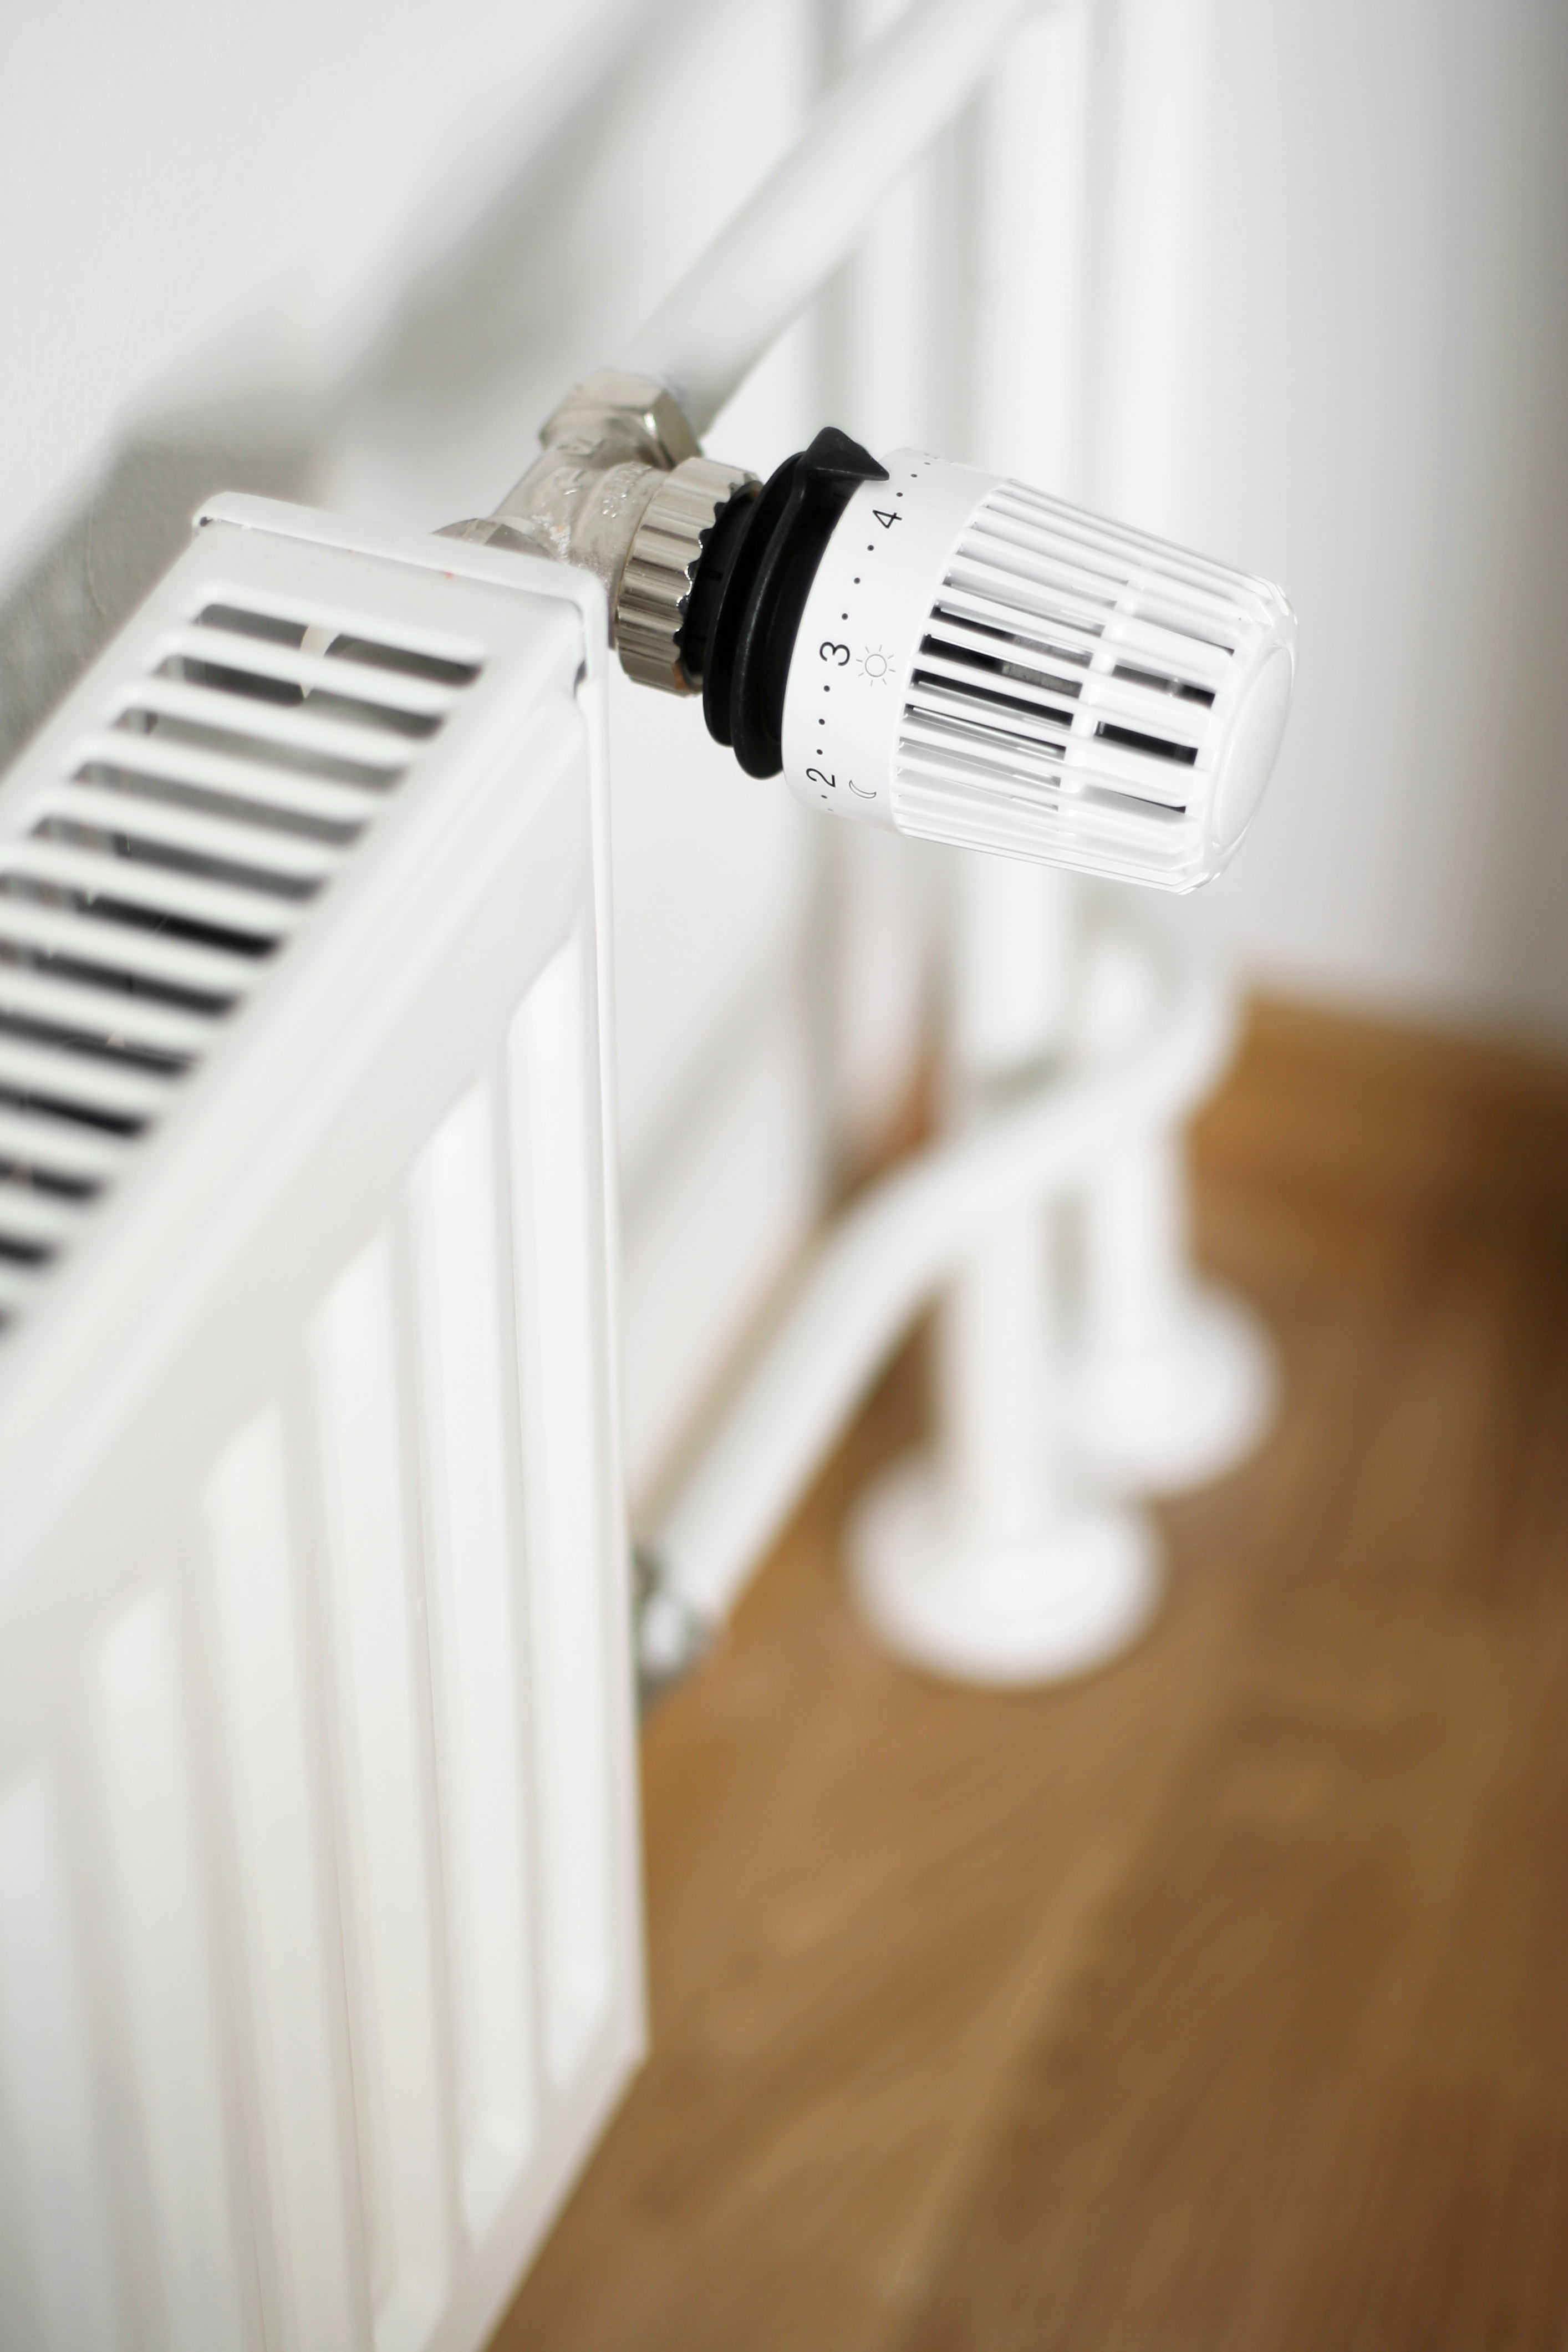 Cómo limpiar los radiadores de casa